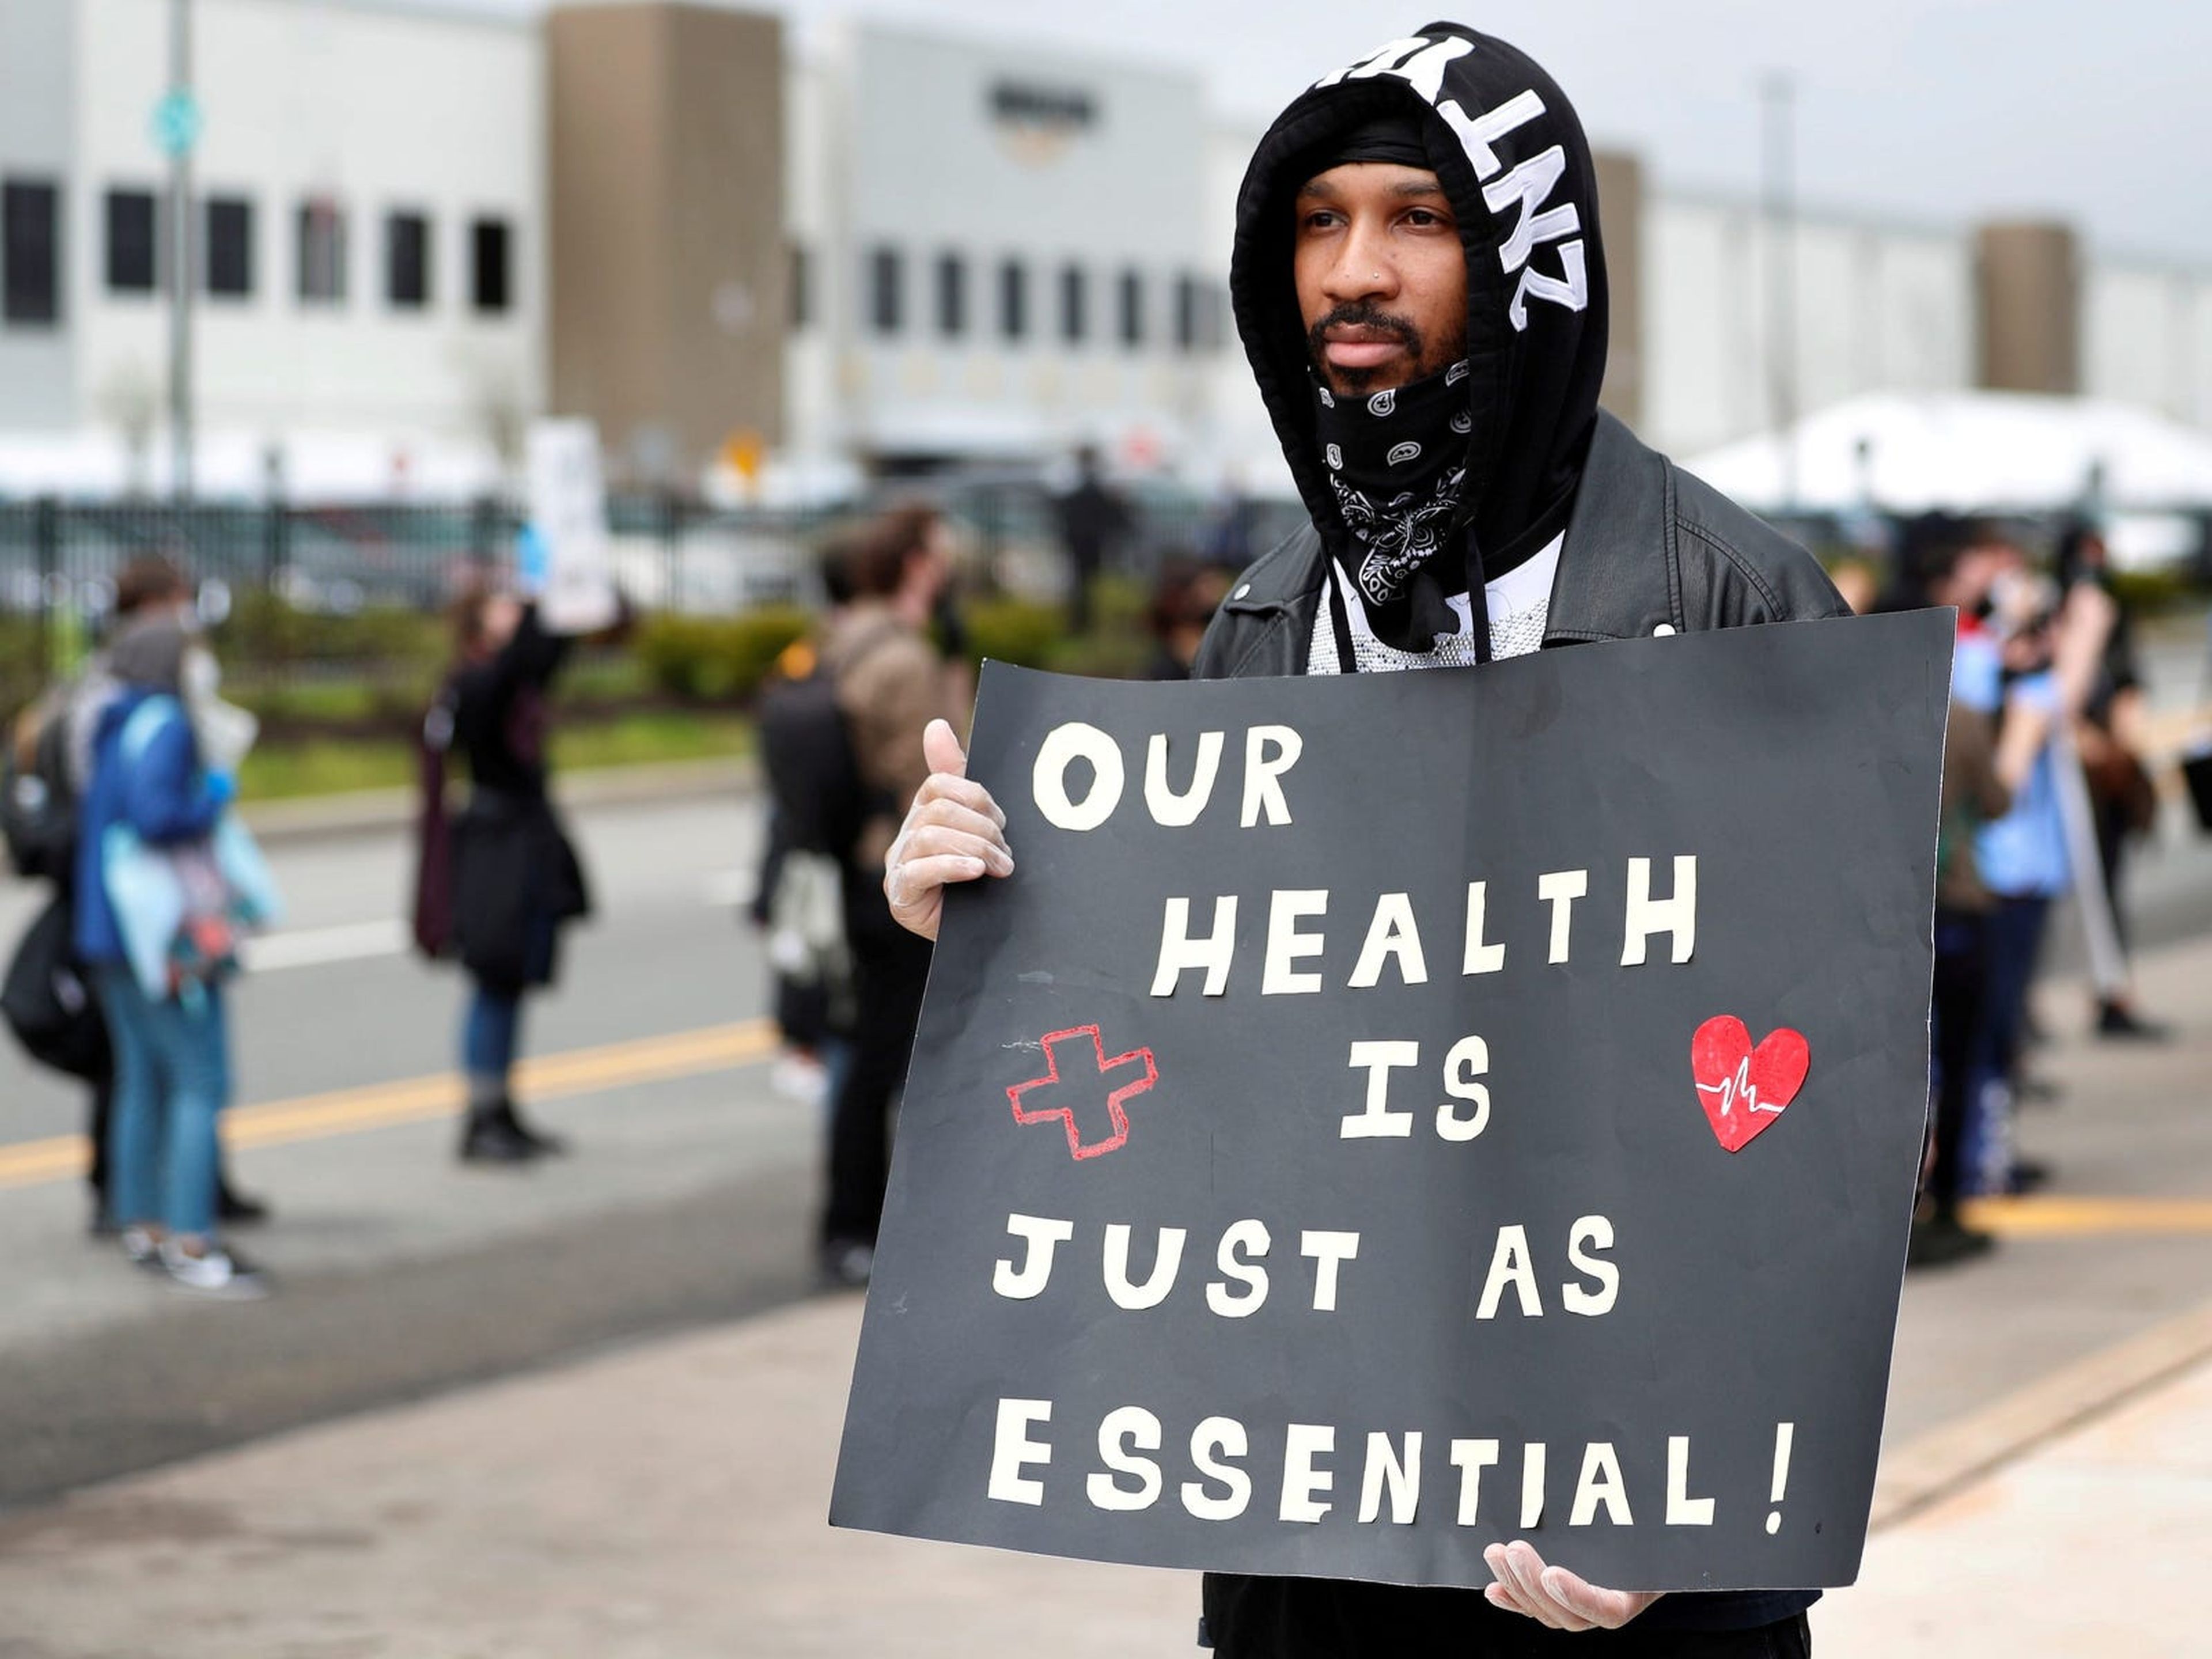 Christian Smalls, exempleado de Amazon, manifestándose durante una protesta frente a un almacén de Amazon en Staten Island el 1 de mayo de 2020.